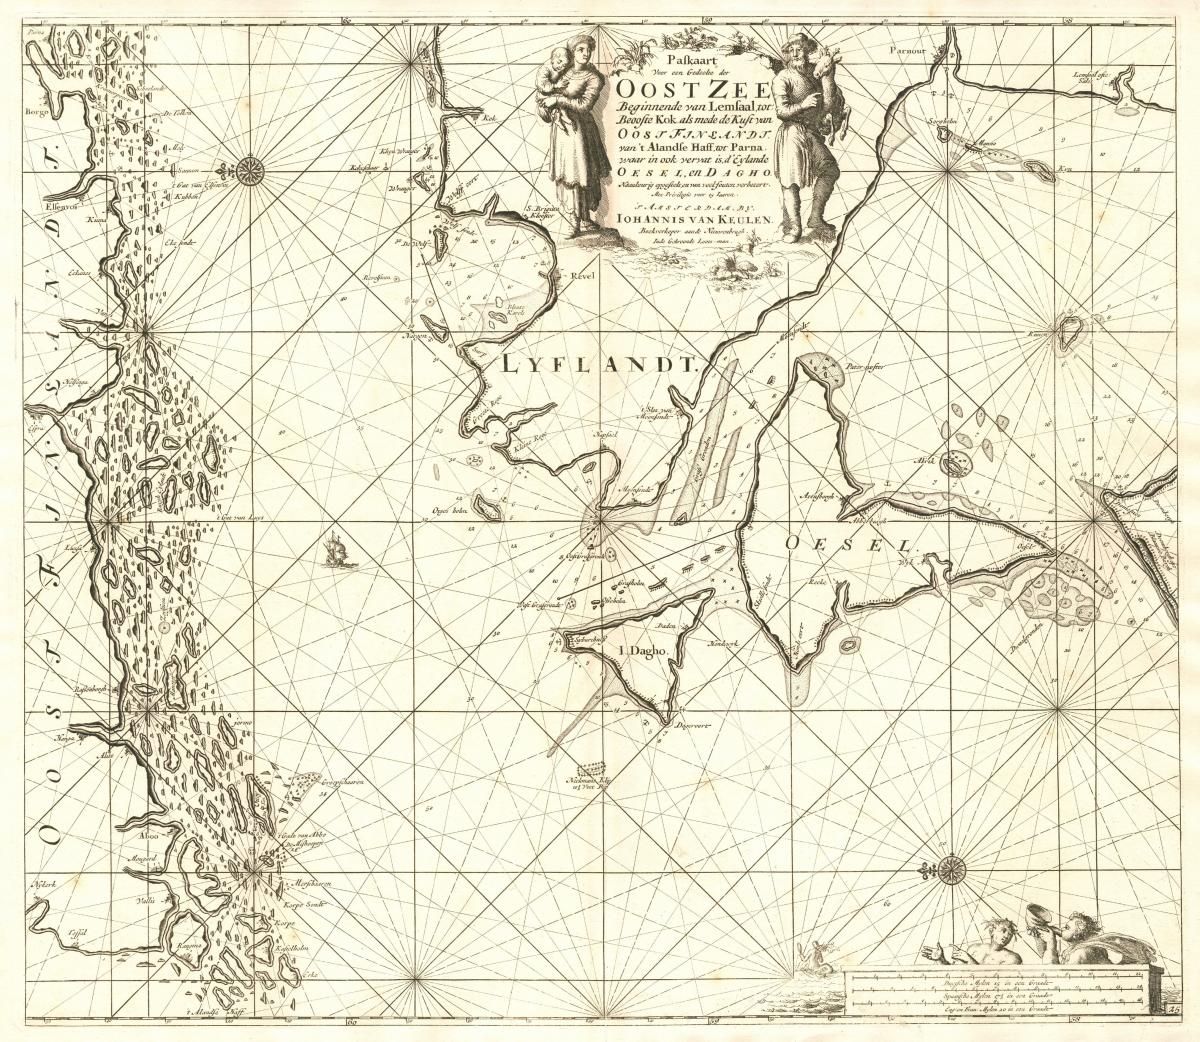 Vanha kartta, jossa näkyy Suomen etelärannikko ja Viron itärannikkoa saarineen.